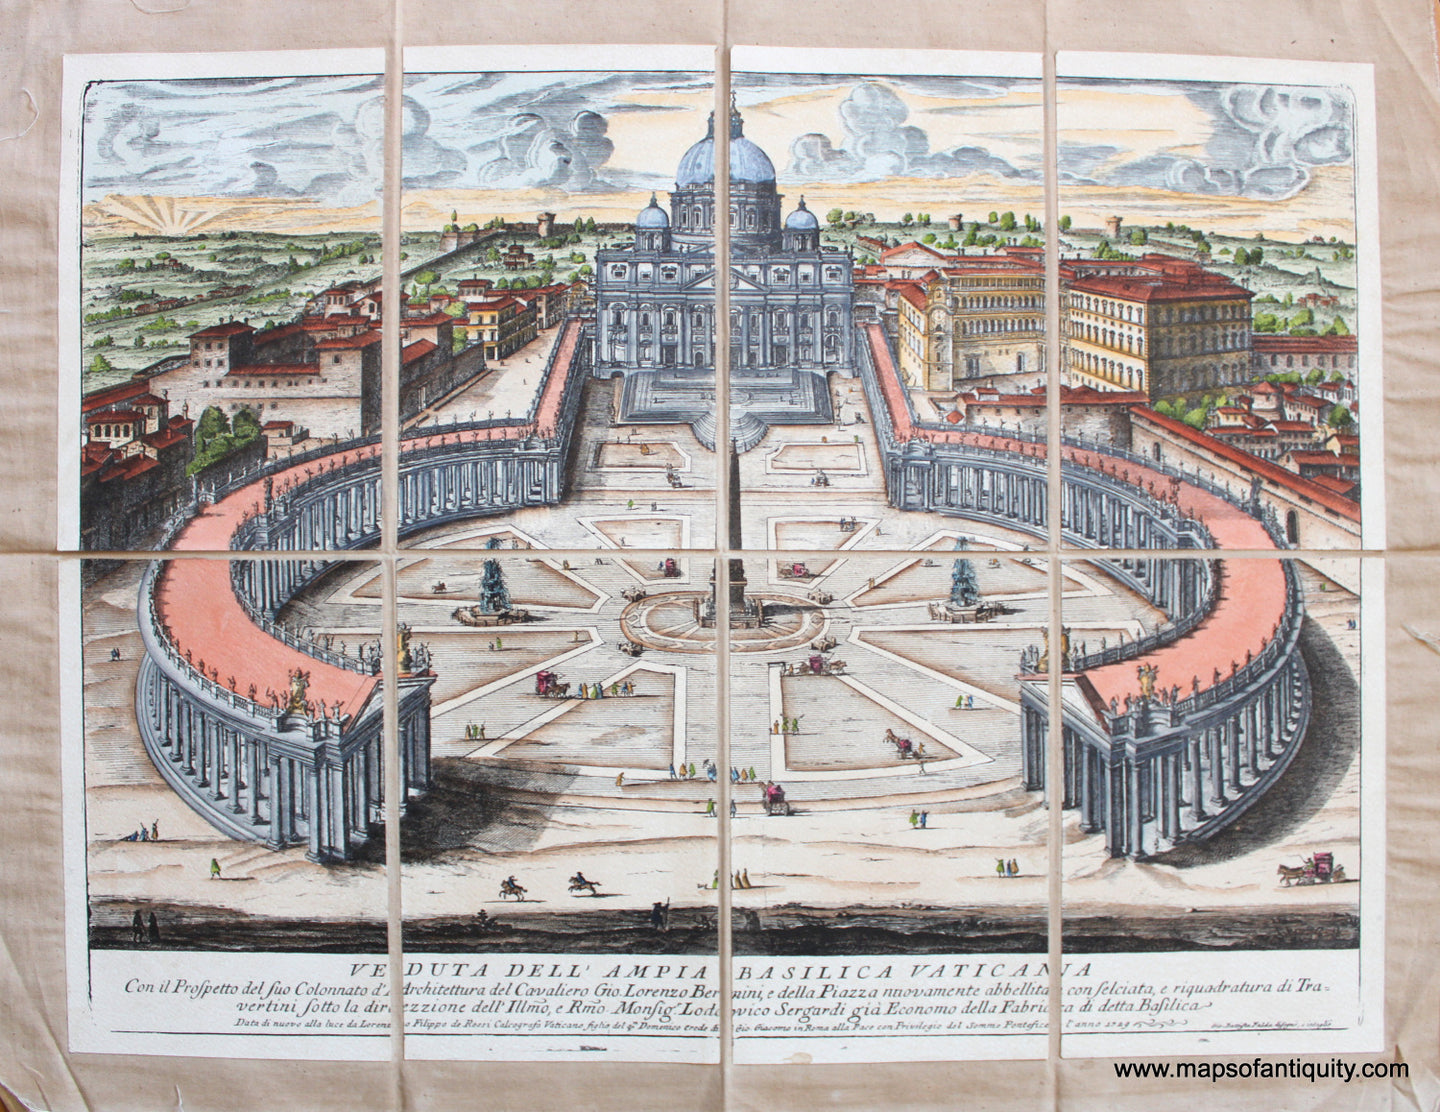 High-quality-Reproduction-Veduta-dell'-Ampia-Basilica-Vaticana-(St.-Peter's-Basilica-Vatican-City-Rome)---Reproduction-Reproductions---Reproduction-Maps-Of-Antiquity